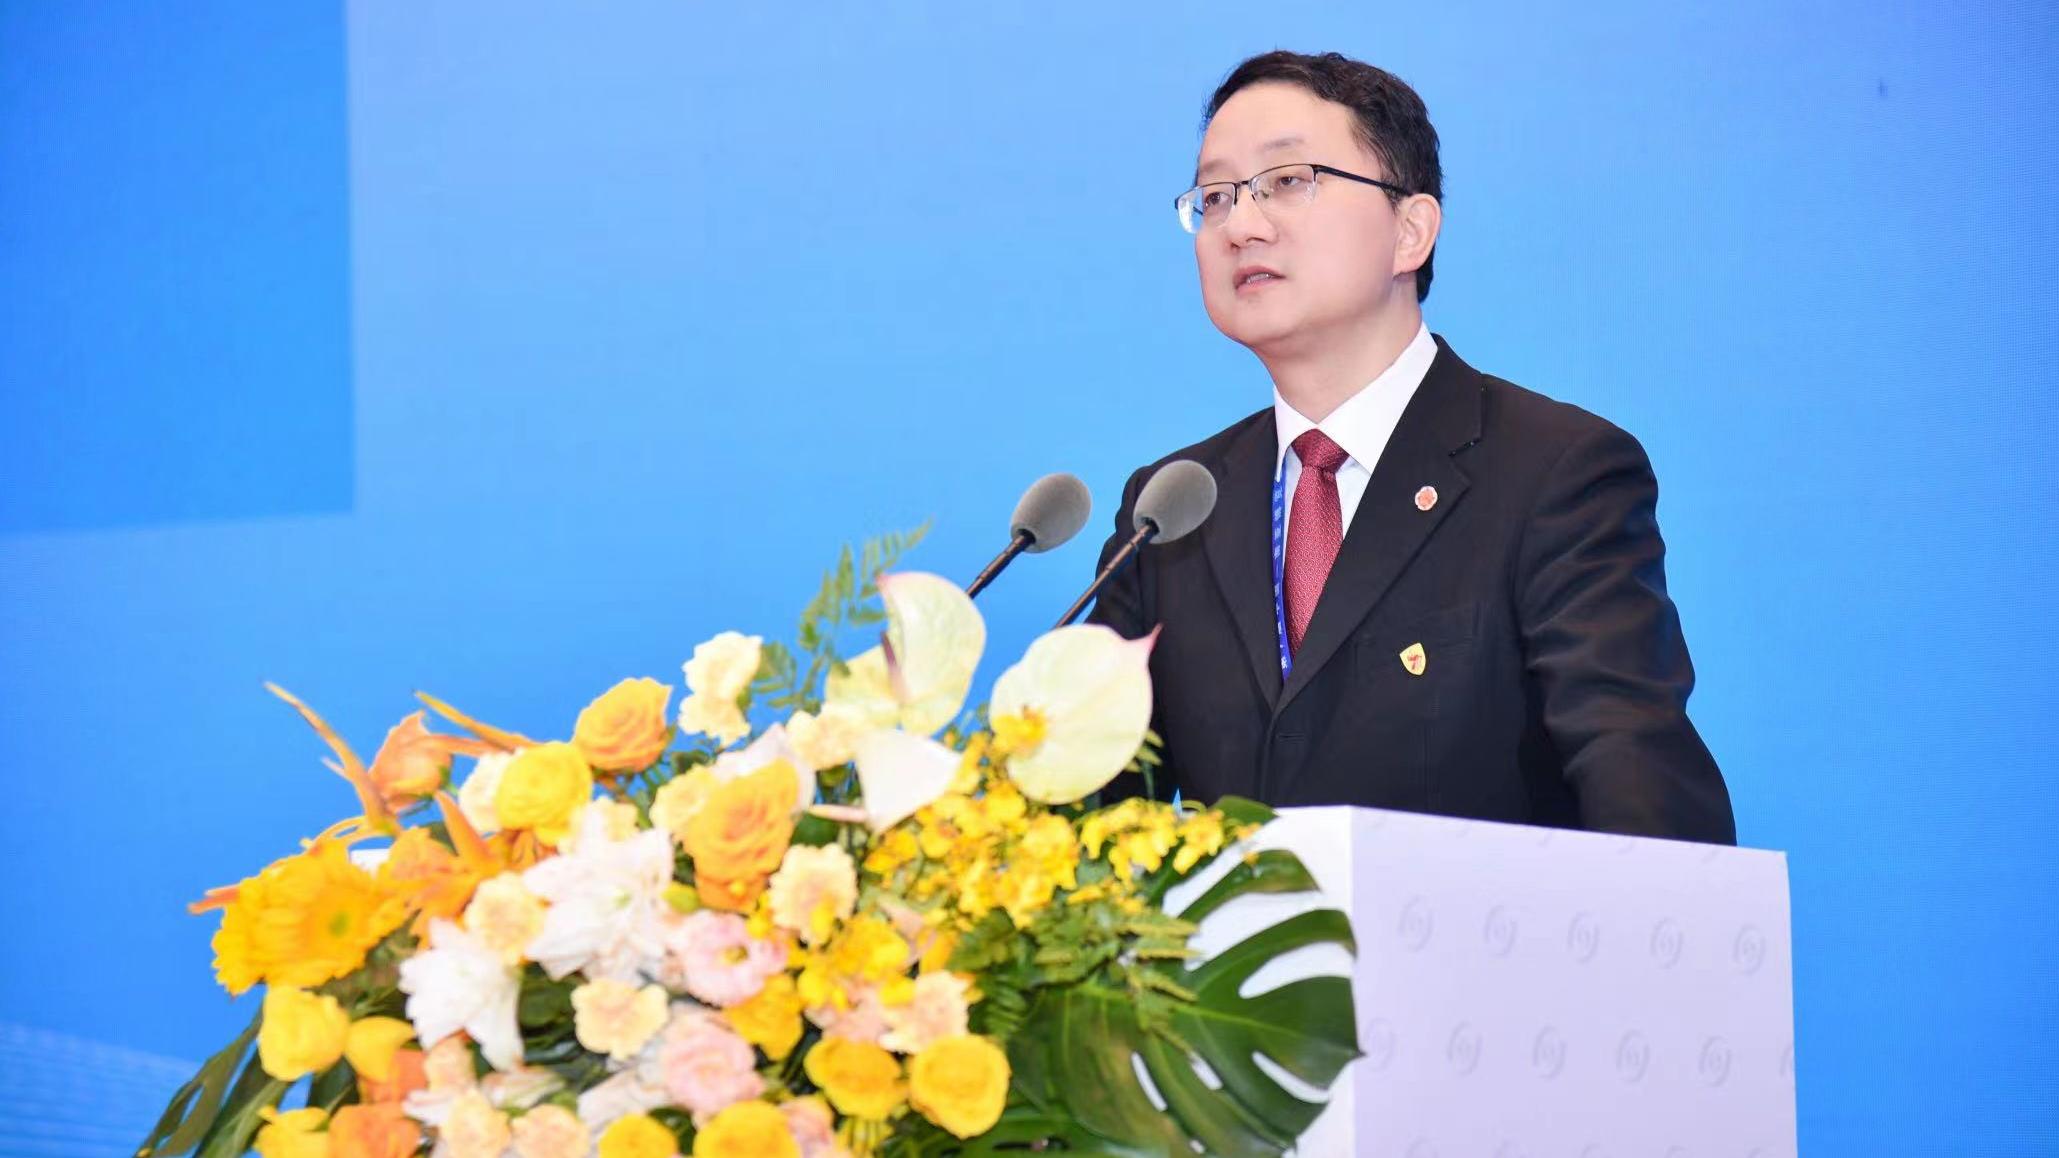 劉勁松司長在中國—南亞合作論壇上講了5個小故事